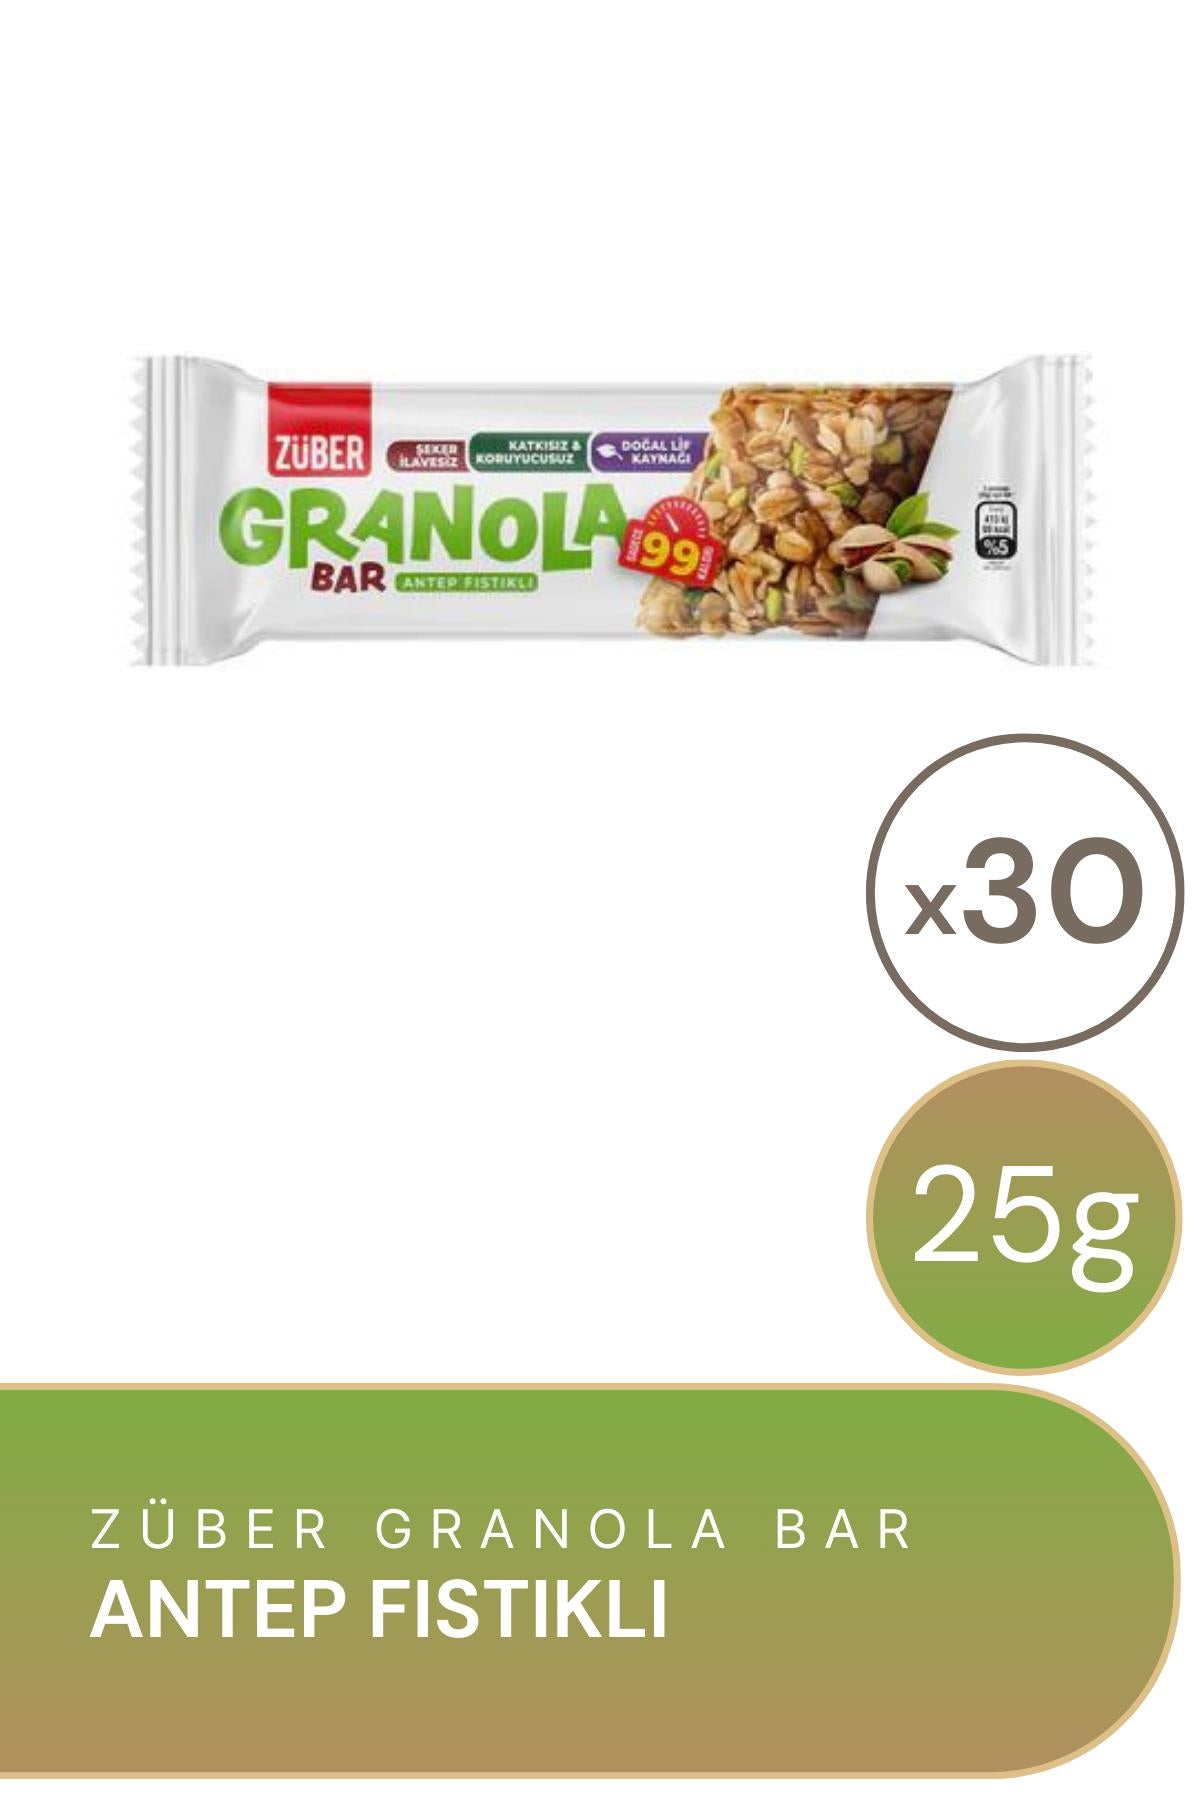 Züber Antep Fıstıklı Granola Bar 25 g 30'lu Paket